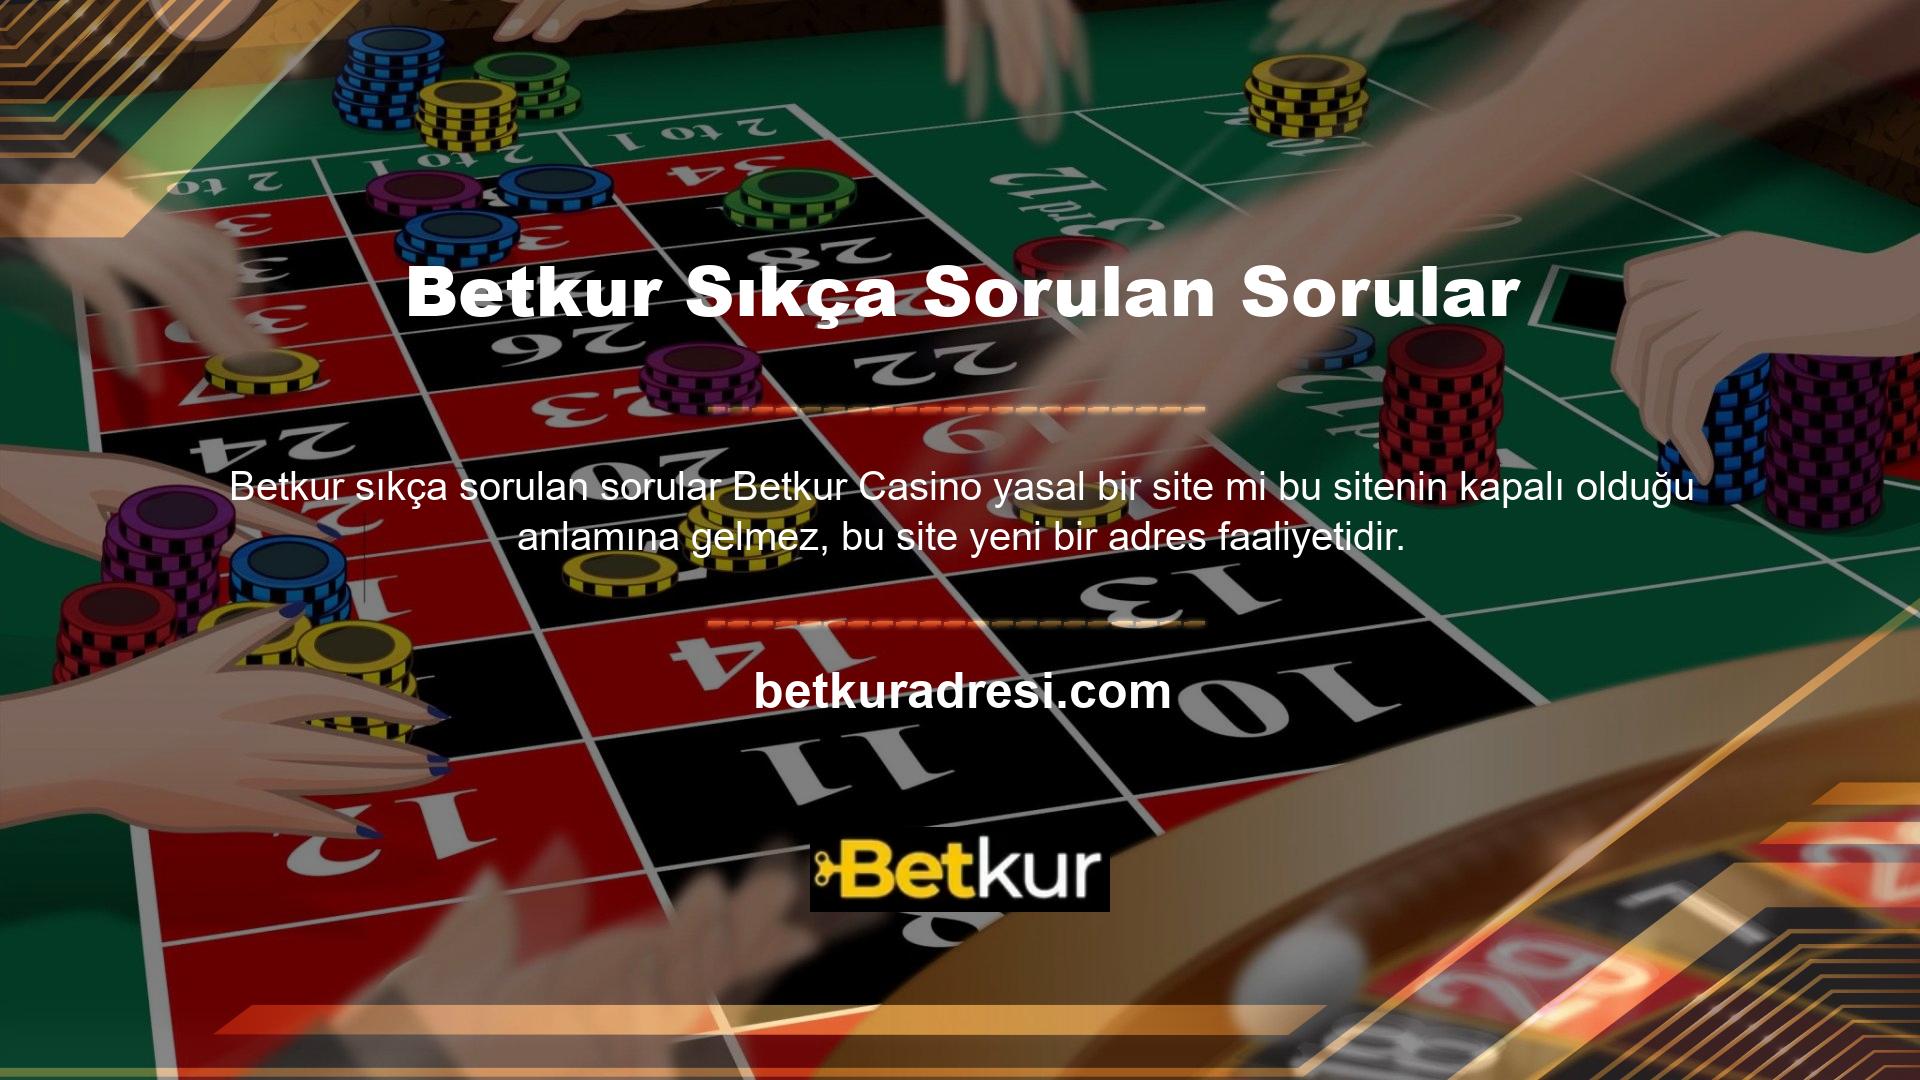 Yeni Betkur Casino web sitesi adresini öğrenmek için bu web sitesini sosyal medyada takip edebilir, en son web sitesi adresini bulabilir ve bu web sitesini kullanıcılara günlük bonuslar sağlamak için kullanabilirsiniz